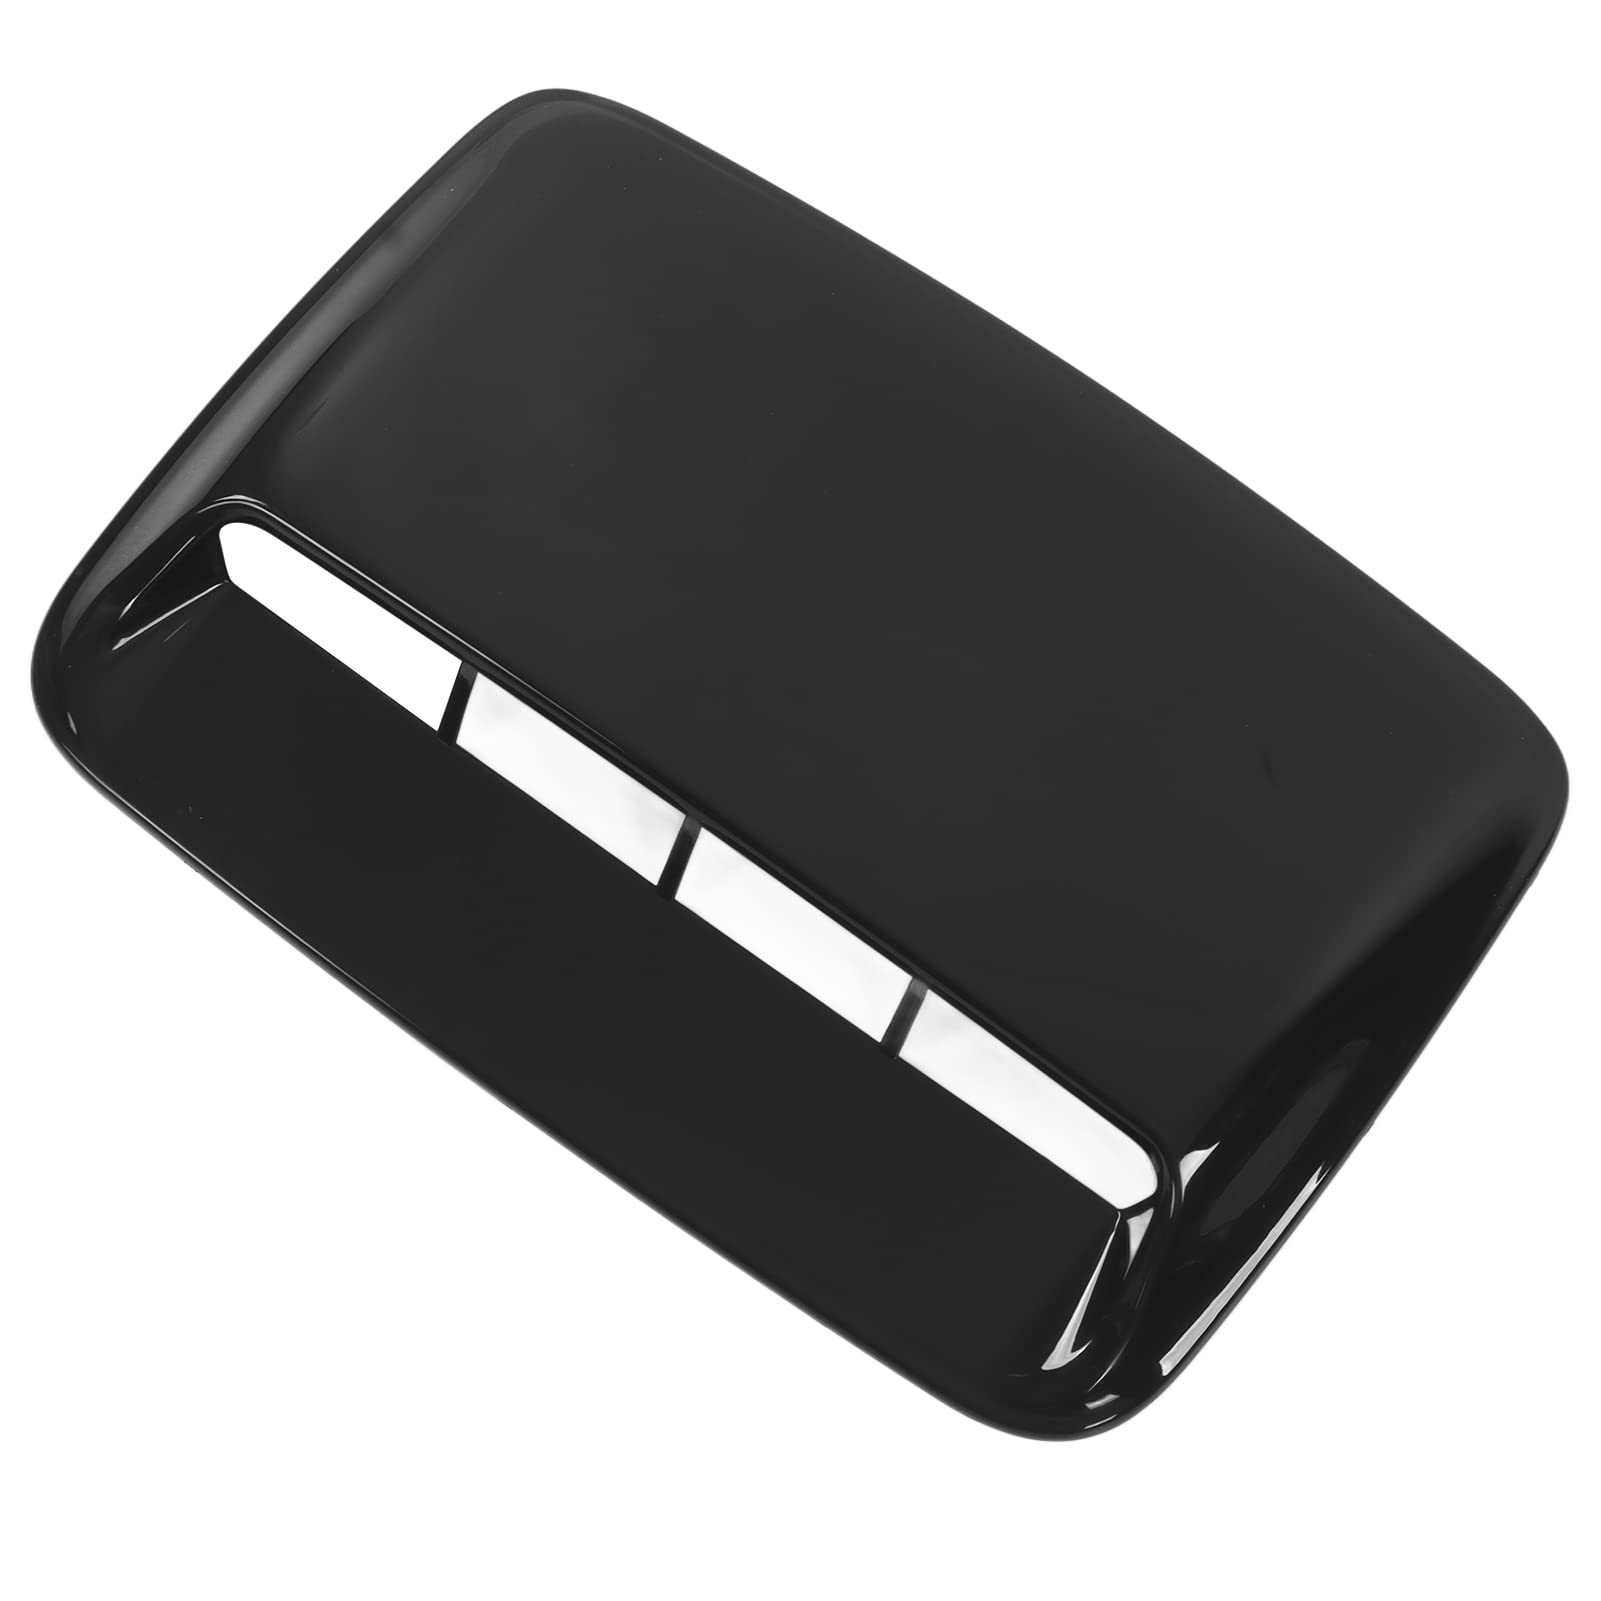 Hauben-Lufthutzen-Abdeckung, einzigartige schwarz glänzende Motorhauben-Luftauslass-Zierleiste Universal für Automodifikation von AUHX